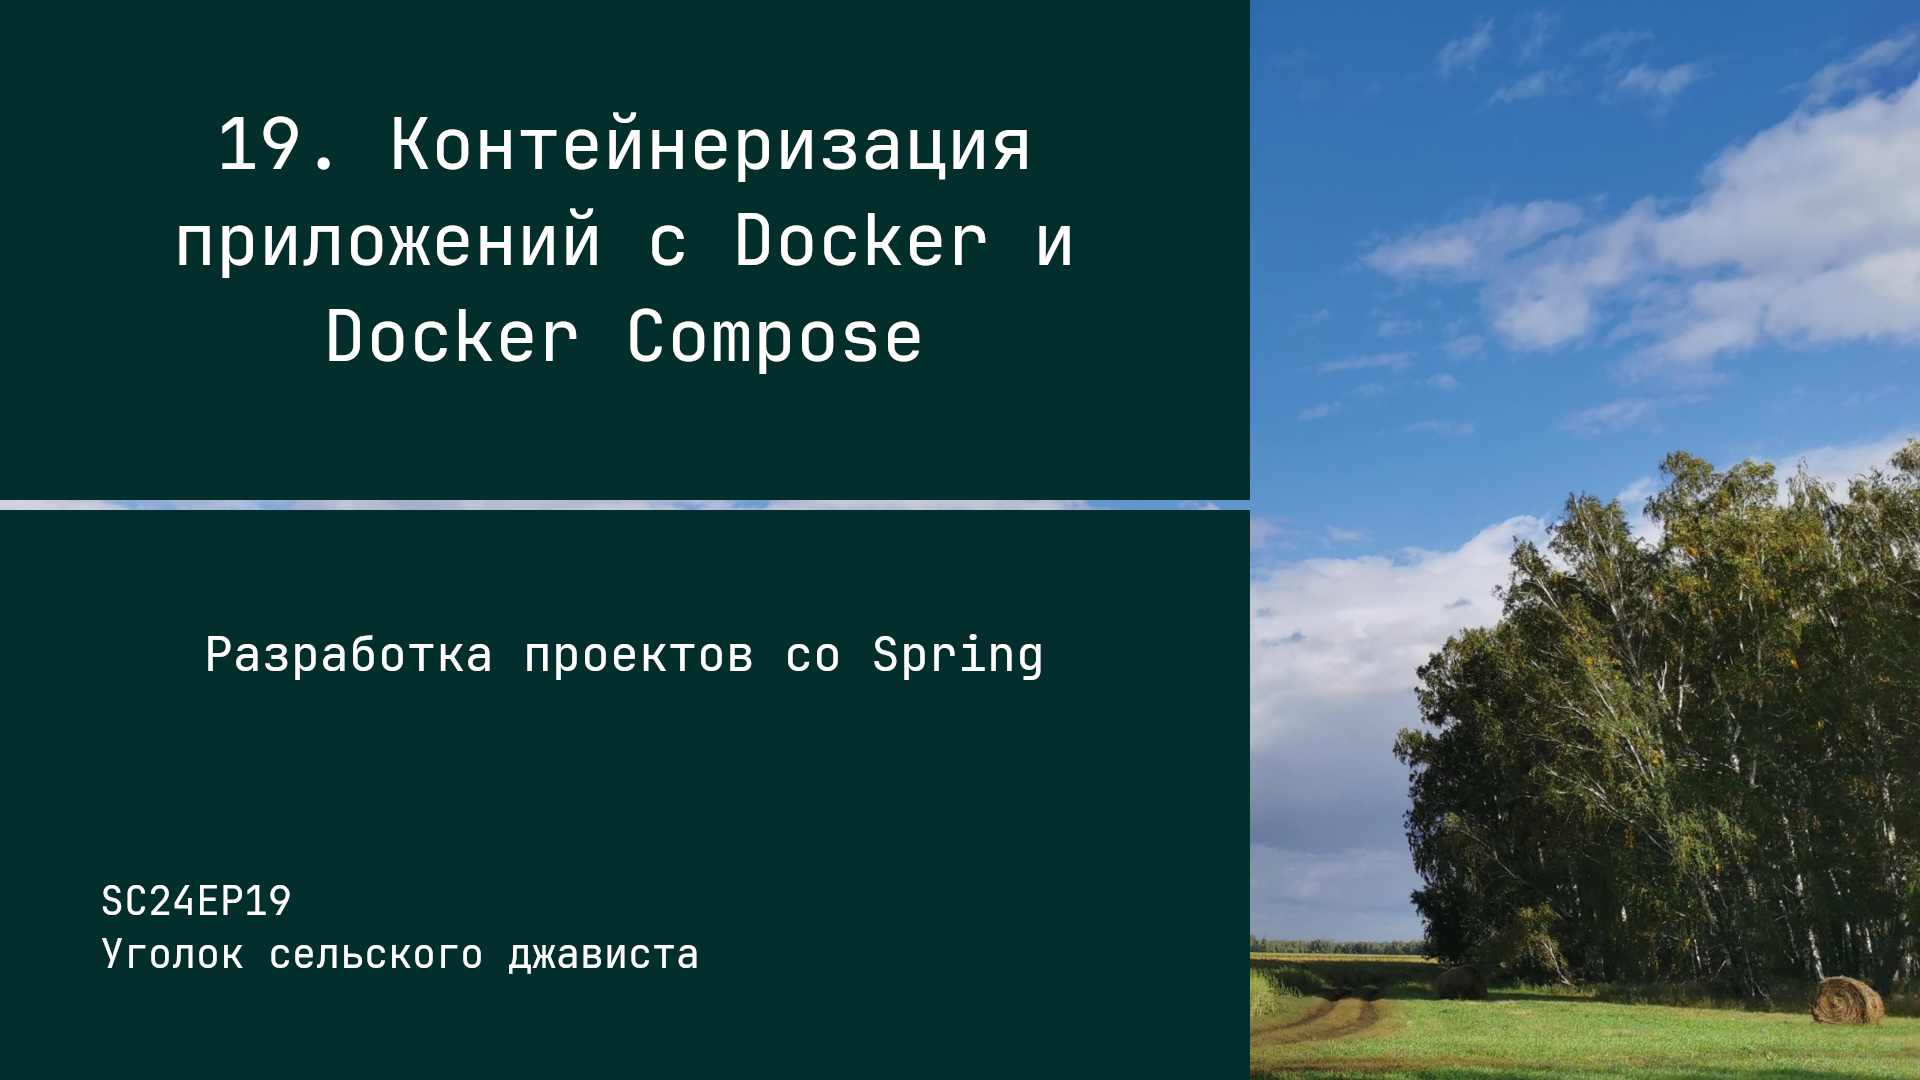 SC24EP19 Контейнеризация приложений с Docker и Docker Compose - Разработка проектов со Spring